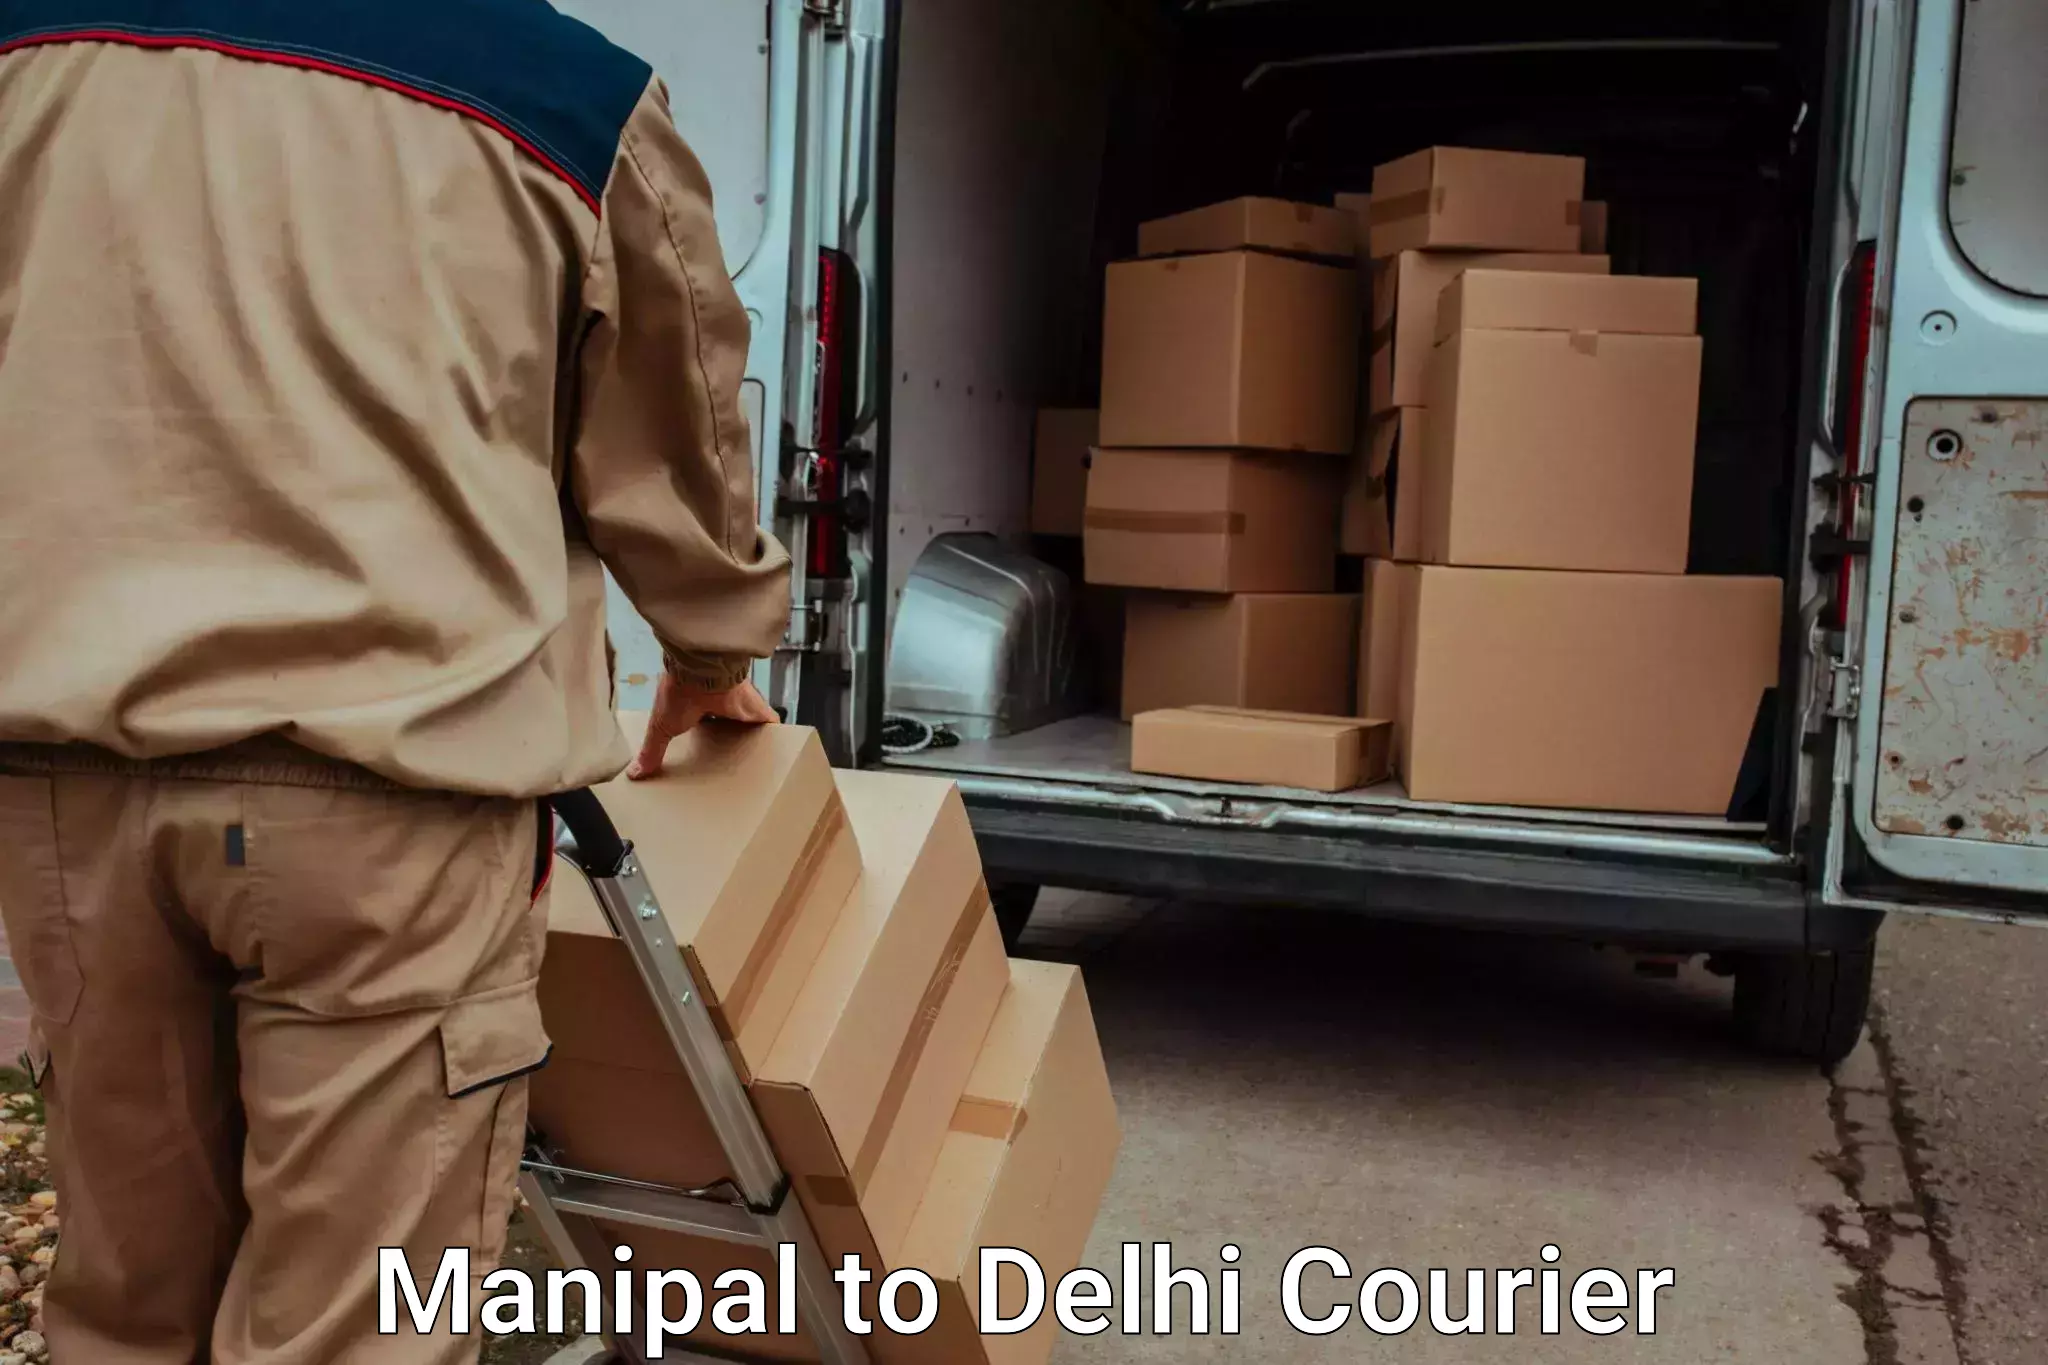 Door-to-door baggage service Manipal to Lodhi Road